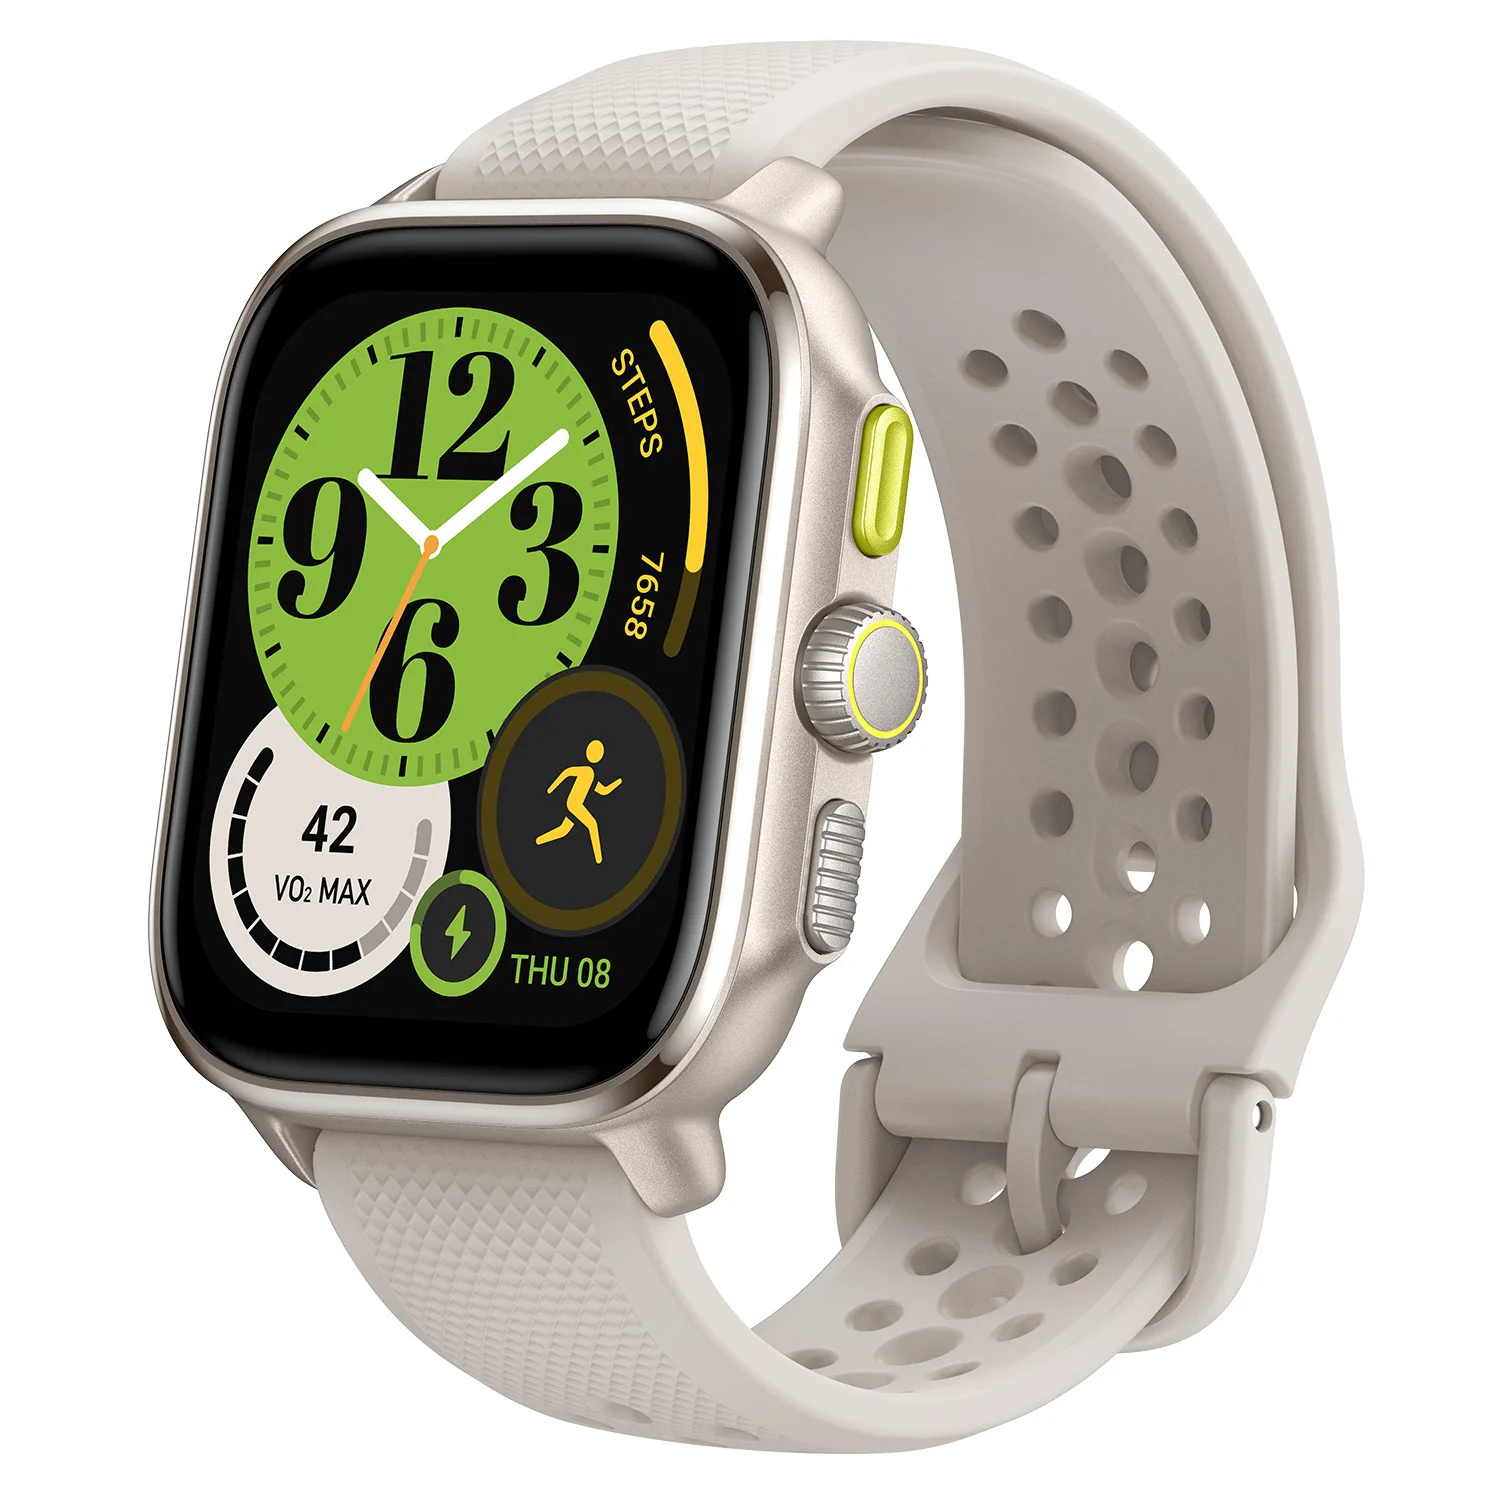 חדש Amazfit ' יטה כיכר Ultra Slim Smartwatch Dual-band GPS 150+מצב ספורט ניטור חכם שעון עבור אנדרואיד iOS